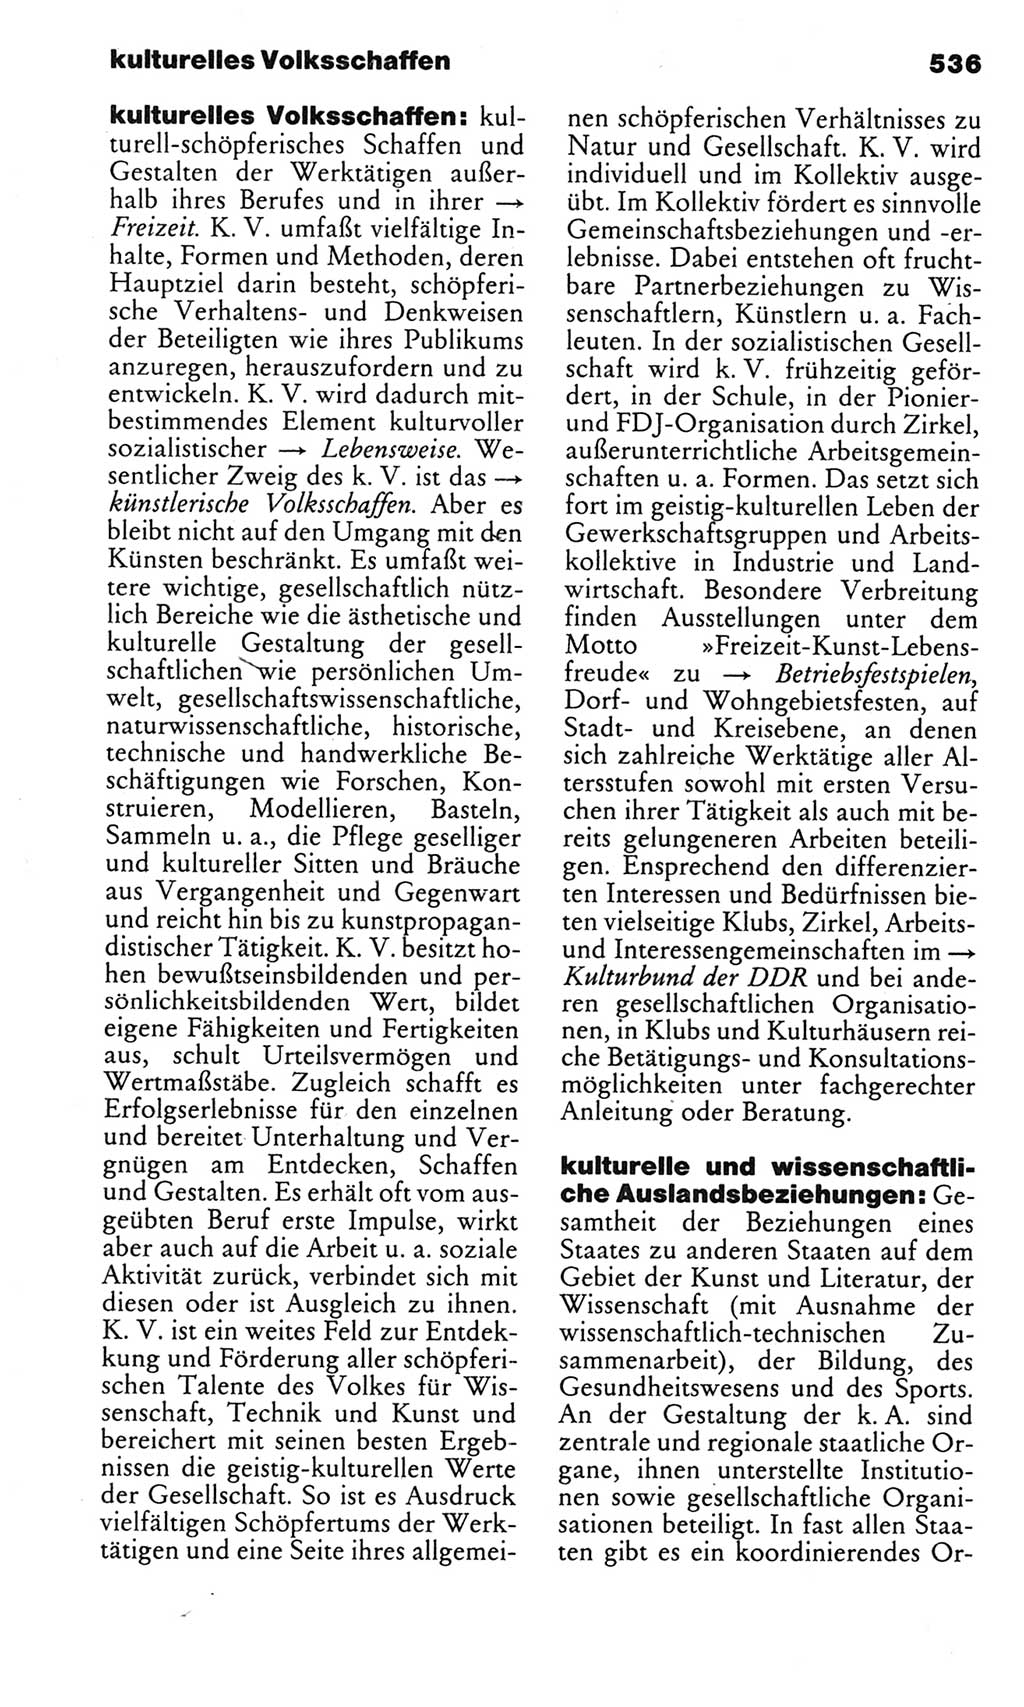 Kleines politisches Wörterbuch [Deutsche Demokratische Republik (DDR)] 1983, Seite 536 (Kl. pol. Wb. DDR 1983, S. 536)